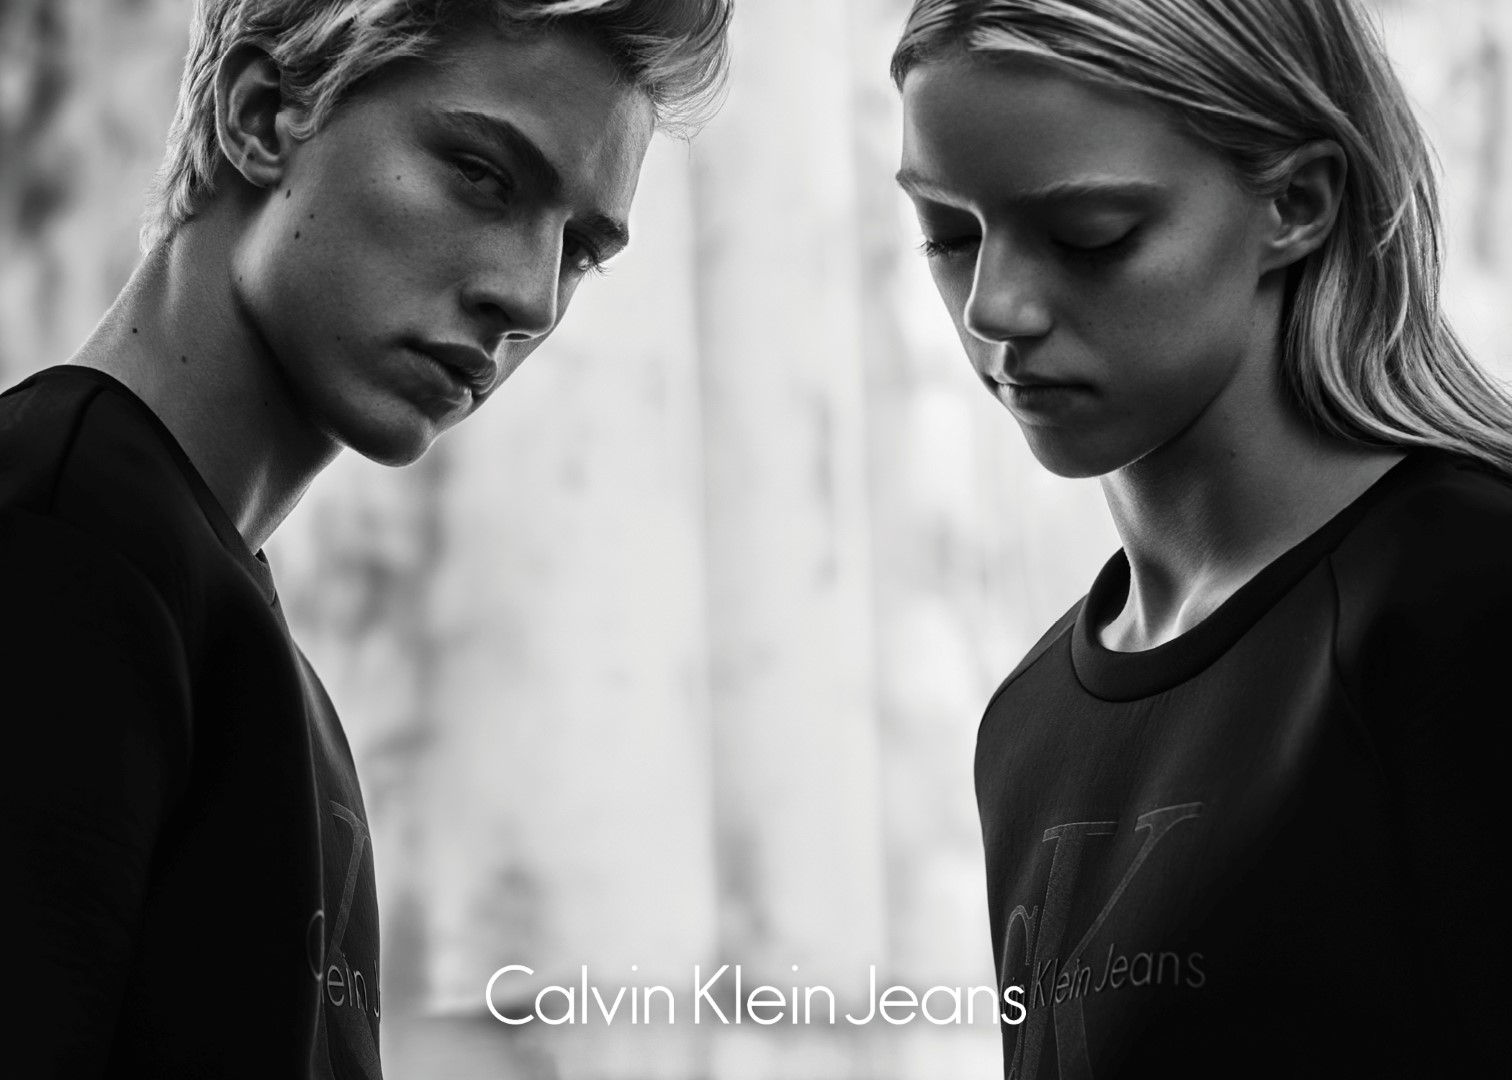 Calvin Klein Jeans 2015: il lancio della Limited Edition Black Series